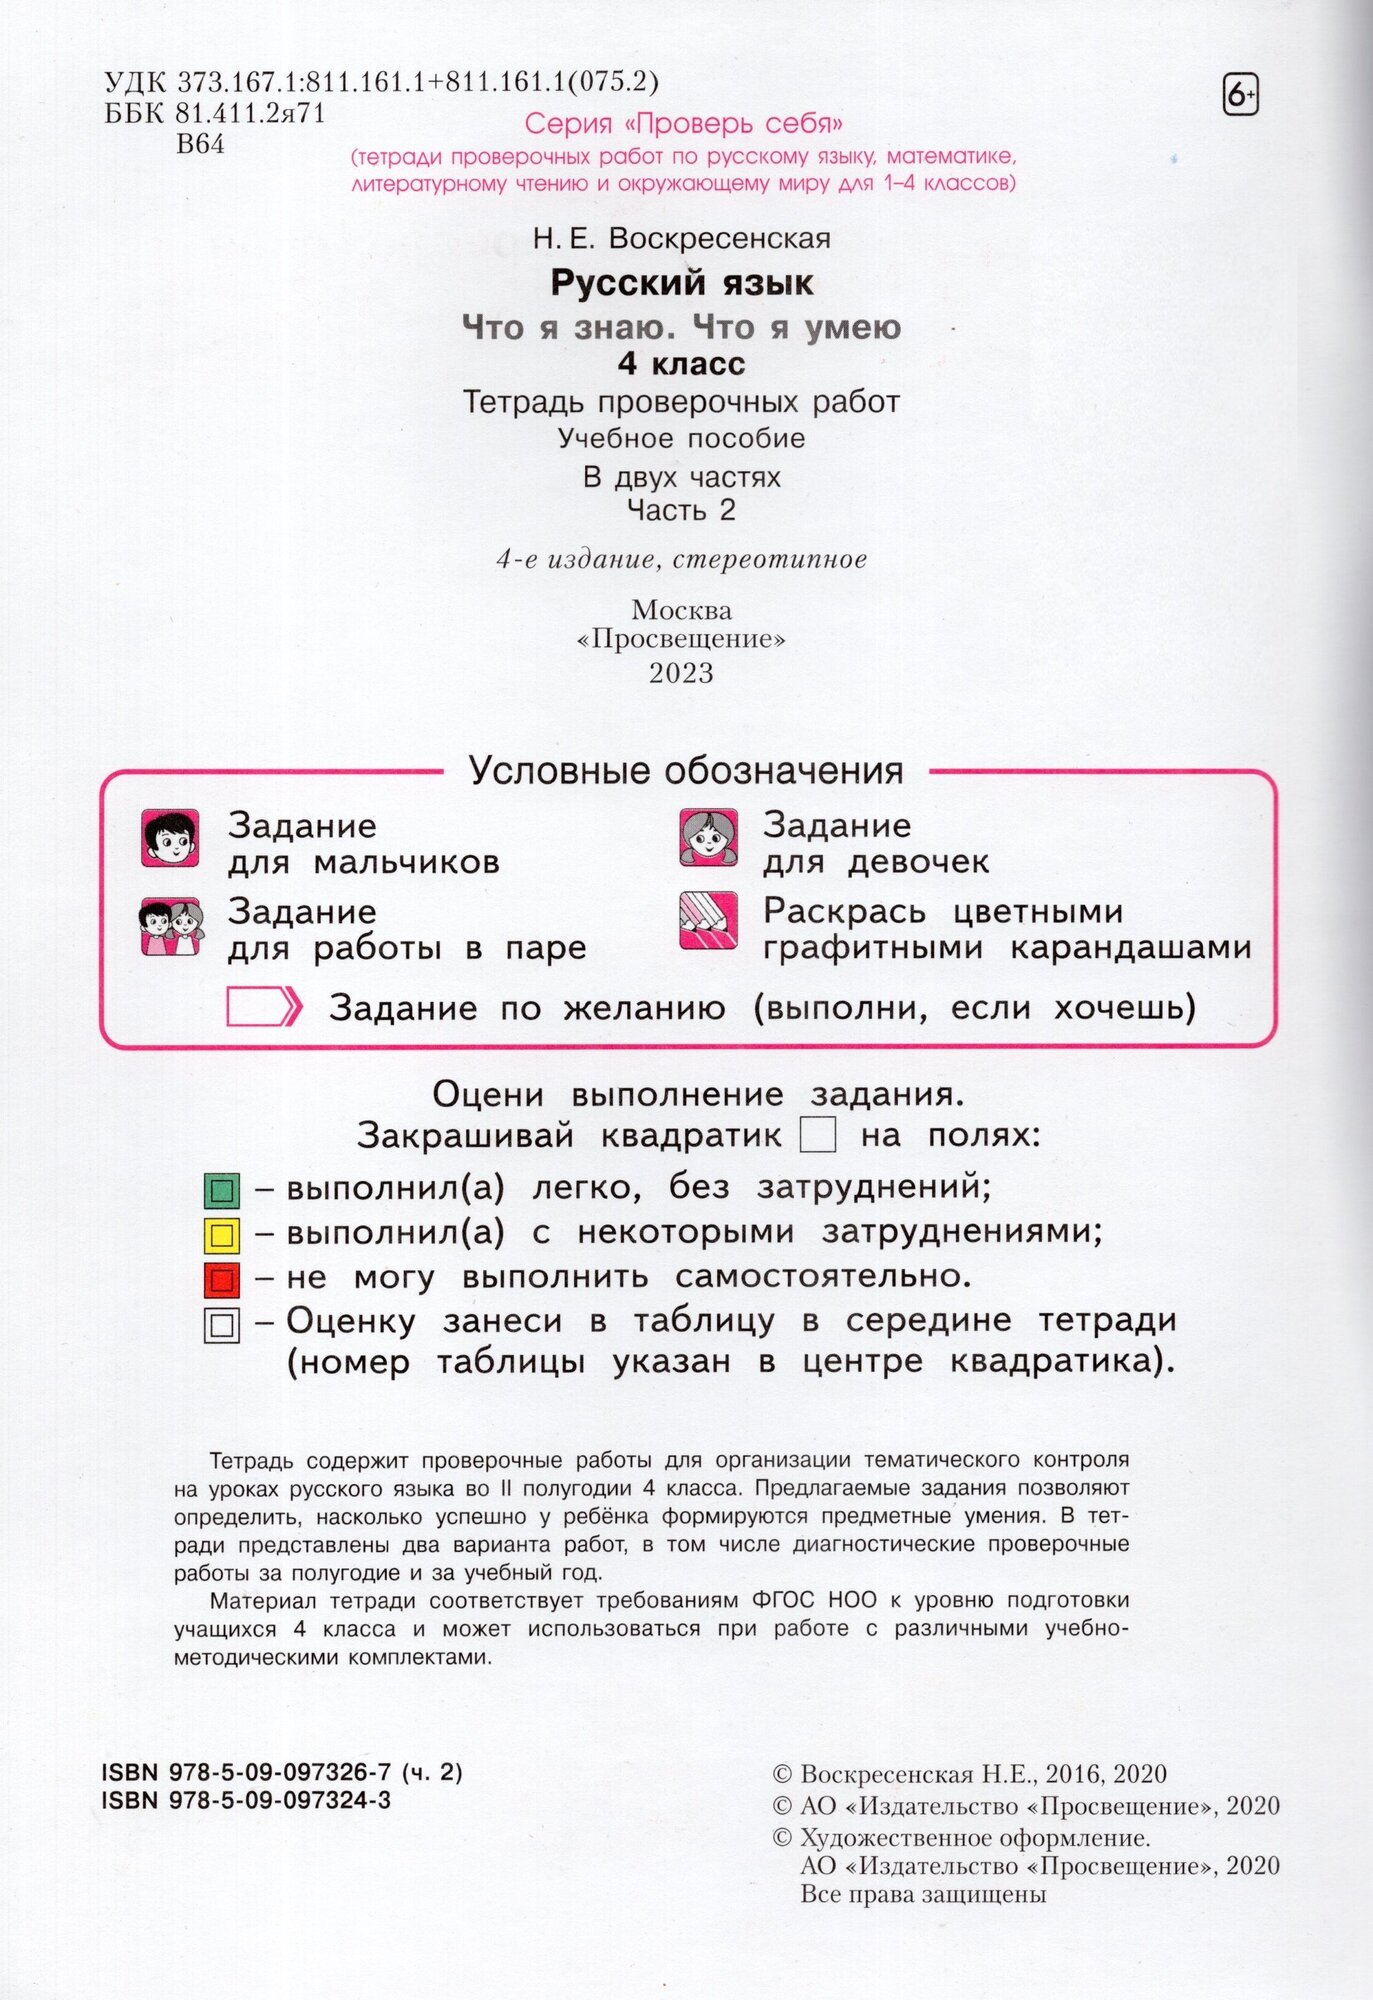 Что я знаю. Что я умею. Русский язык. 4 класс. Тетрадь проверочных работ. Часть 2. Вариант I, II - фото №2